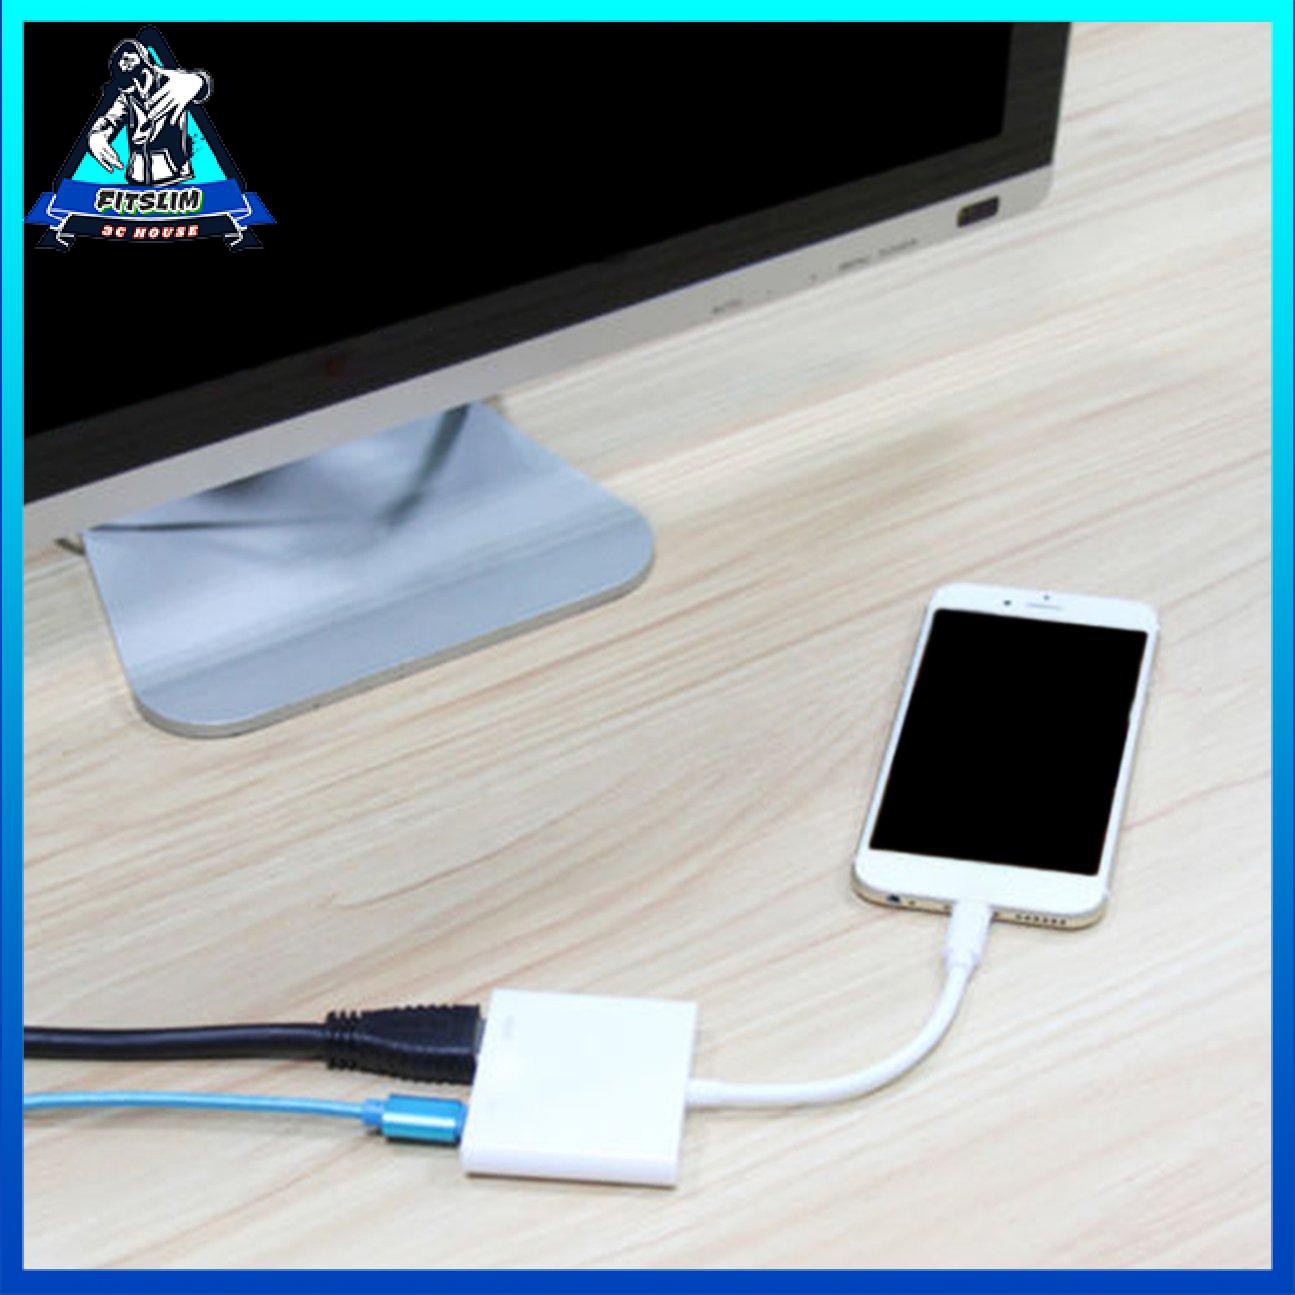 Cáp chuyển đổi Lightning sang HDMI Truyền hình kỹ thuật số AV Plug & Play cho iPhone